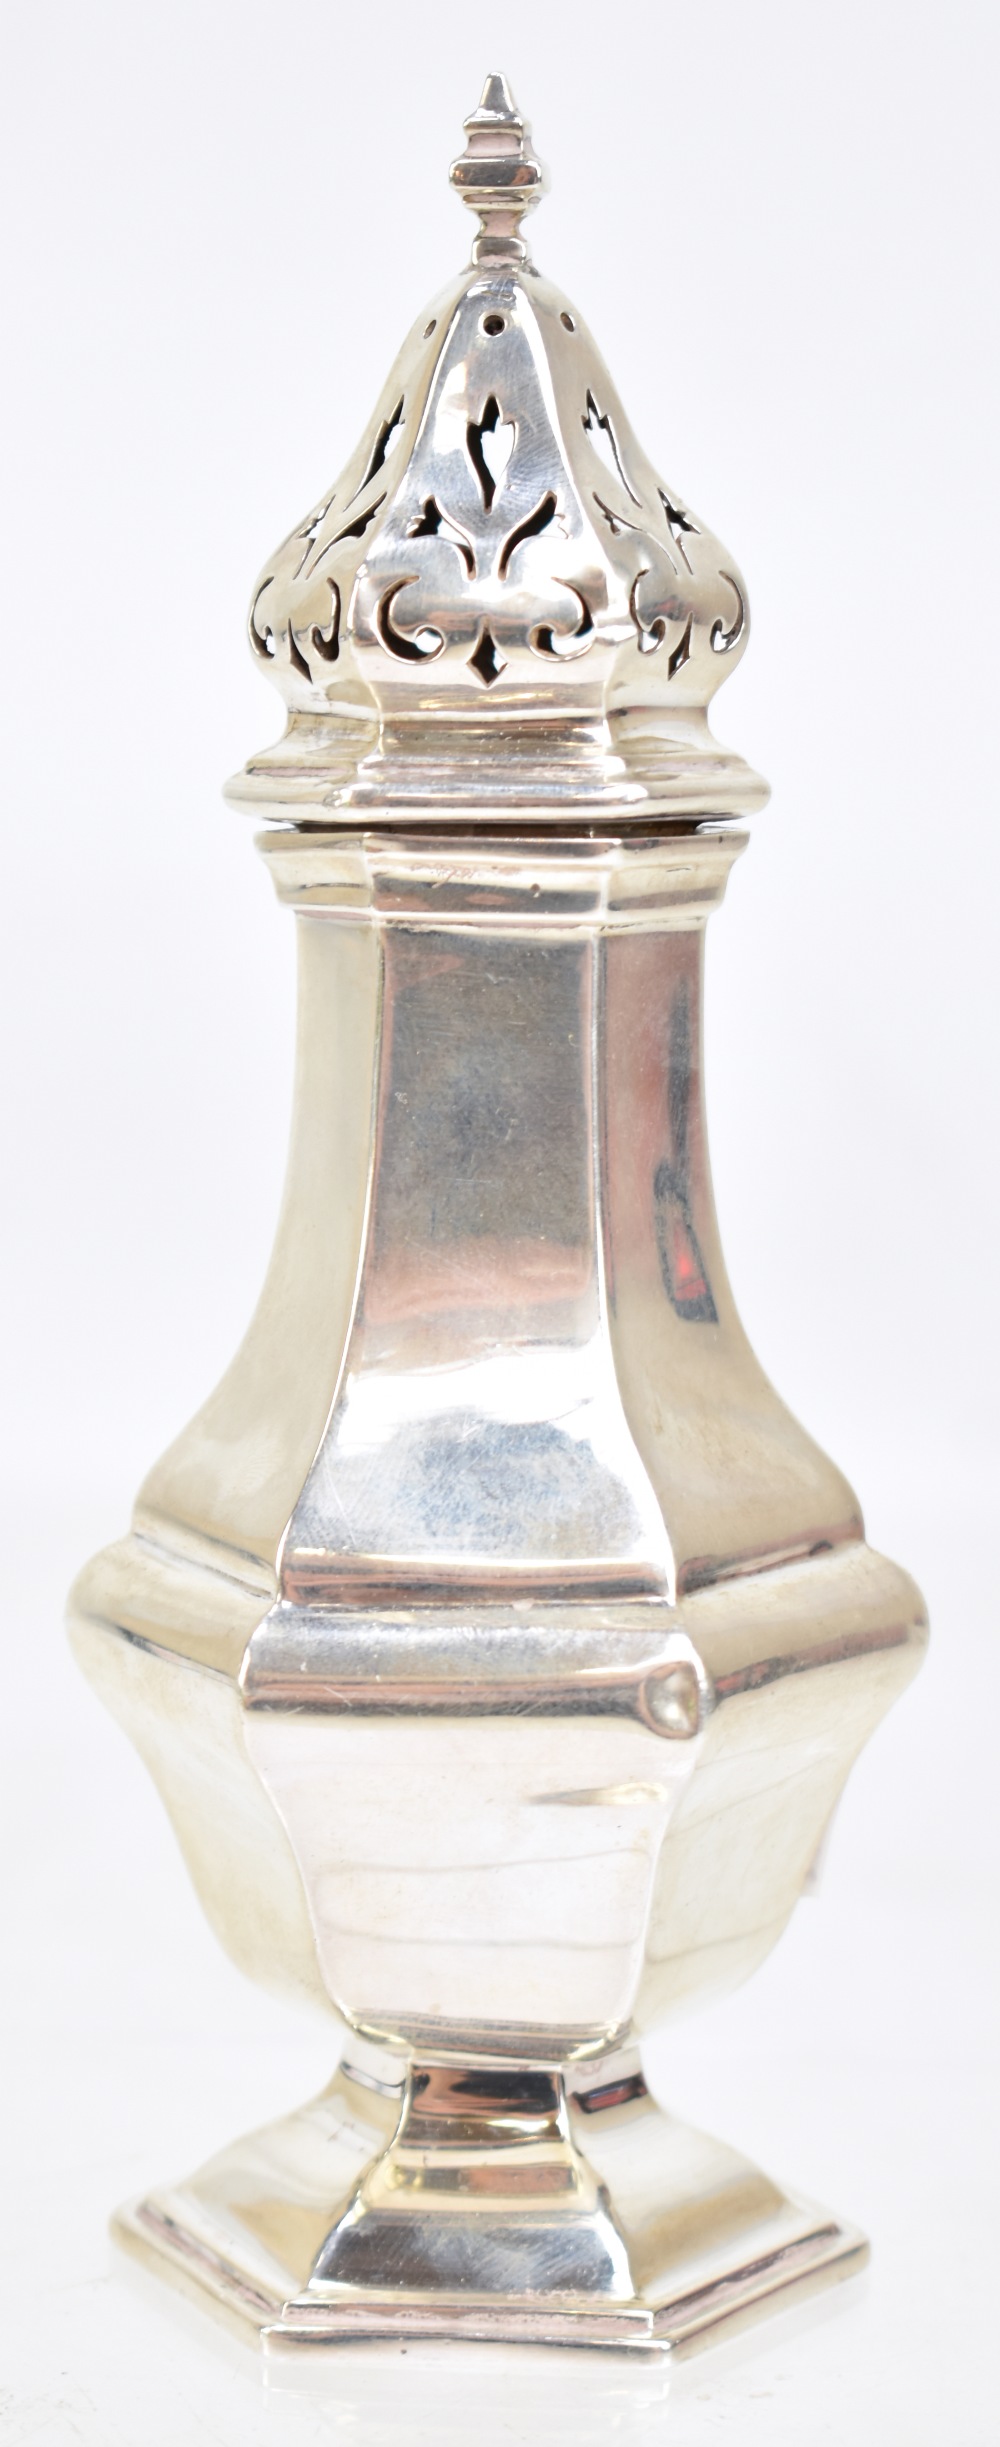 COLLINGWOOD & SONS LTD; a George V hallmarked silver sugar caster of hexagonal form, Birmingham